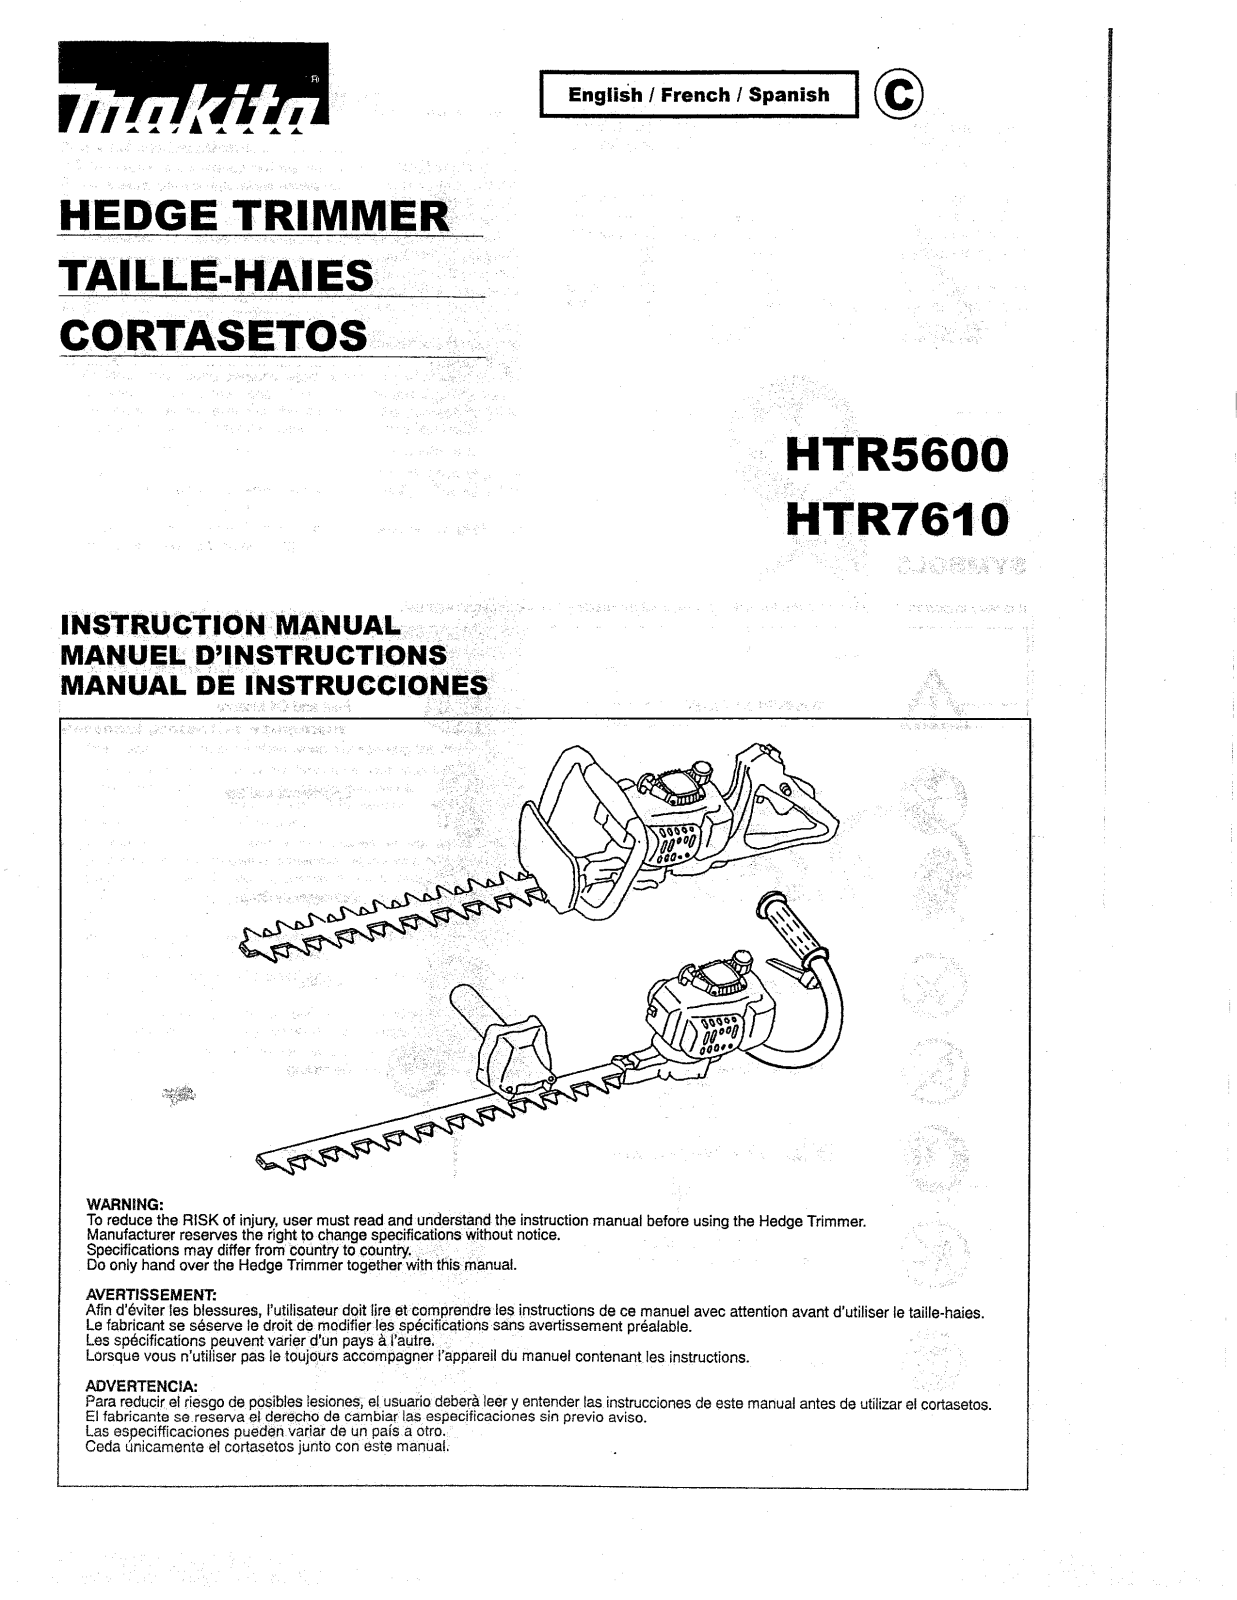 MAKITA HR7610, HTR5600 User Manual